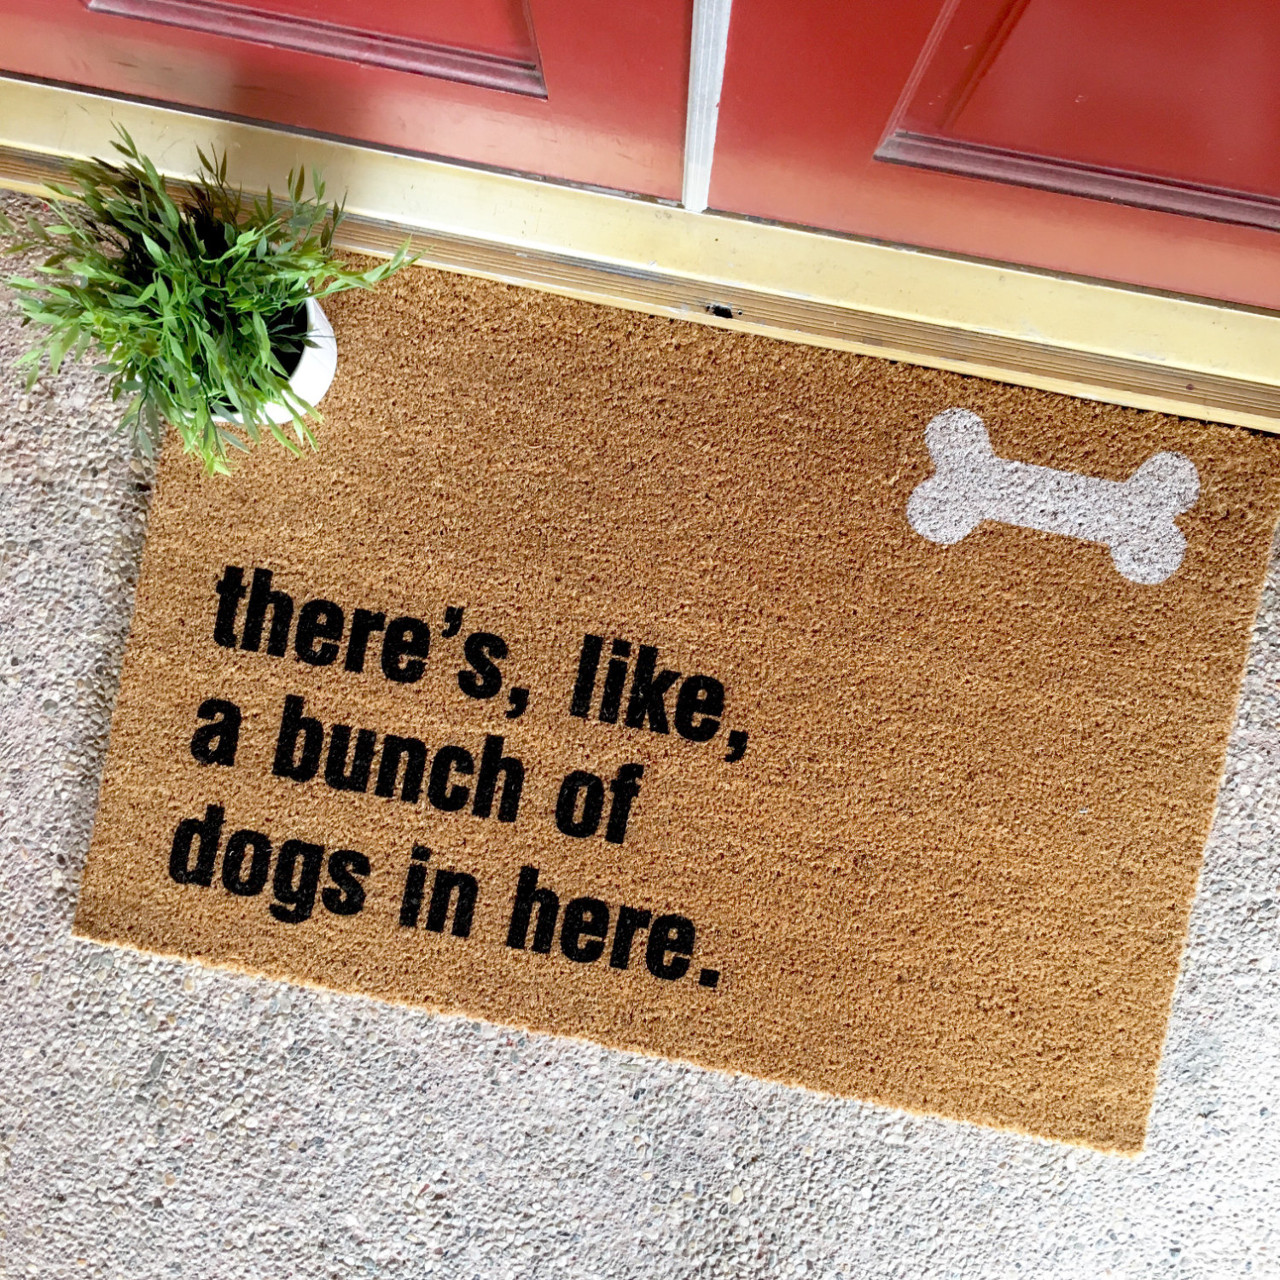 Bunch of Dogs in Here Doormat from The Cheeky Doormat